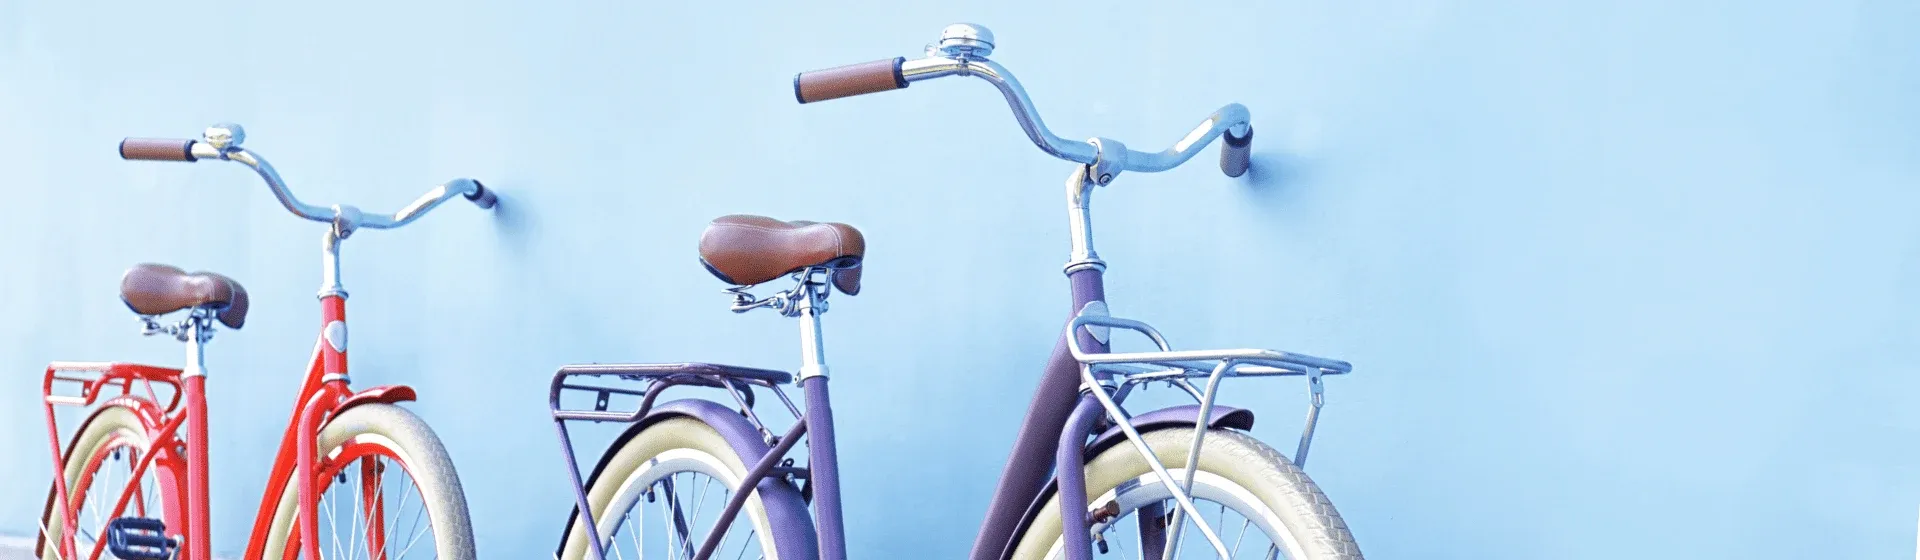 Como escolher a bicicleta ideal?